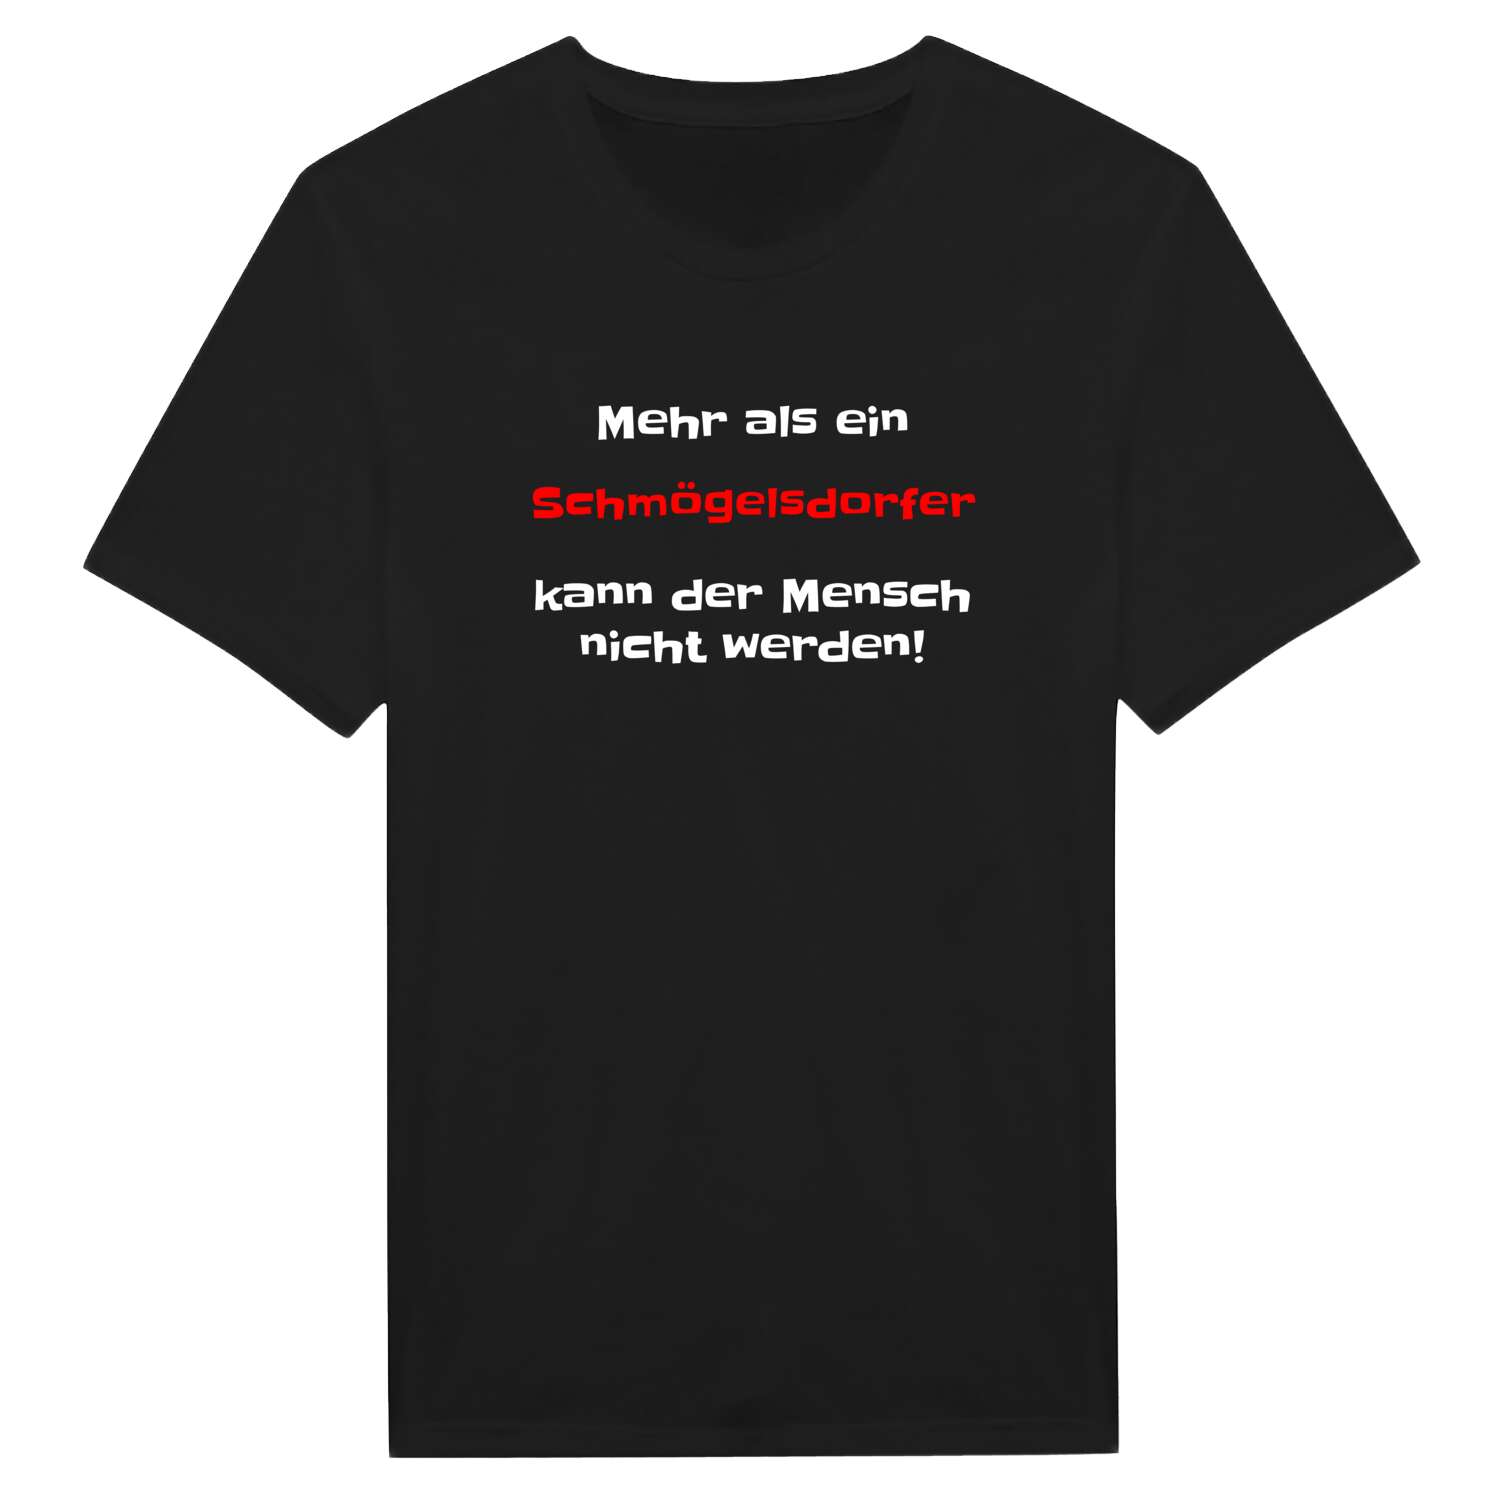 Schmögelsdorf T-Shirt »Mehr als ein«